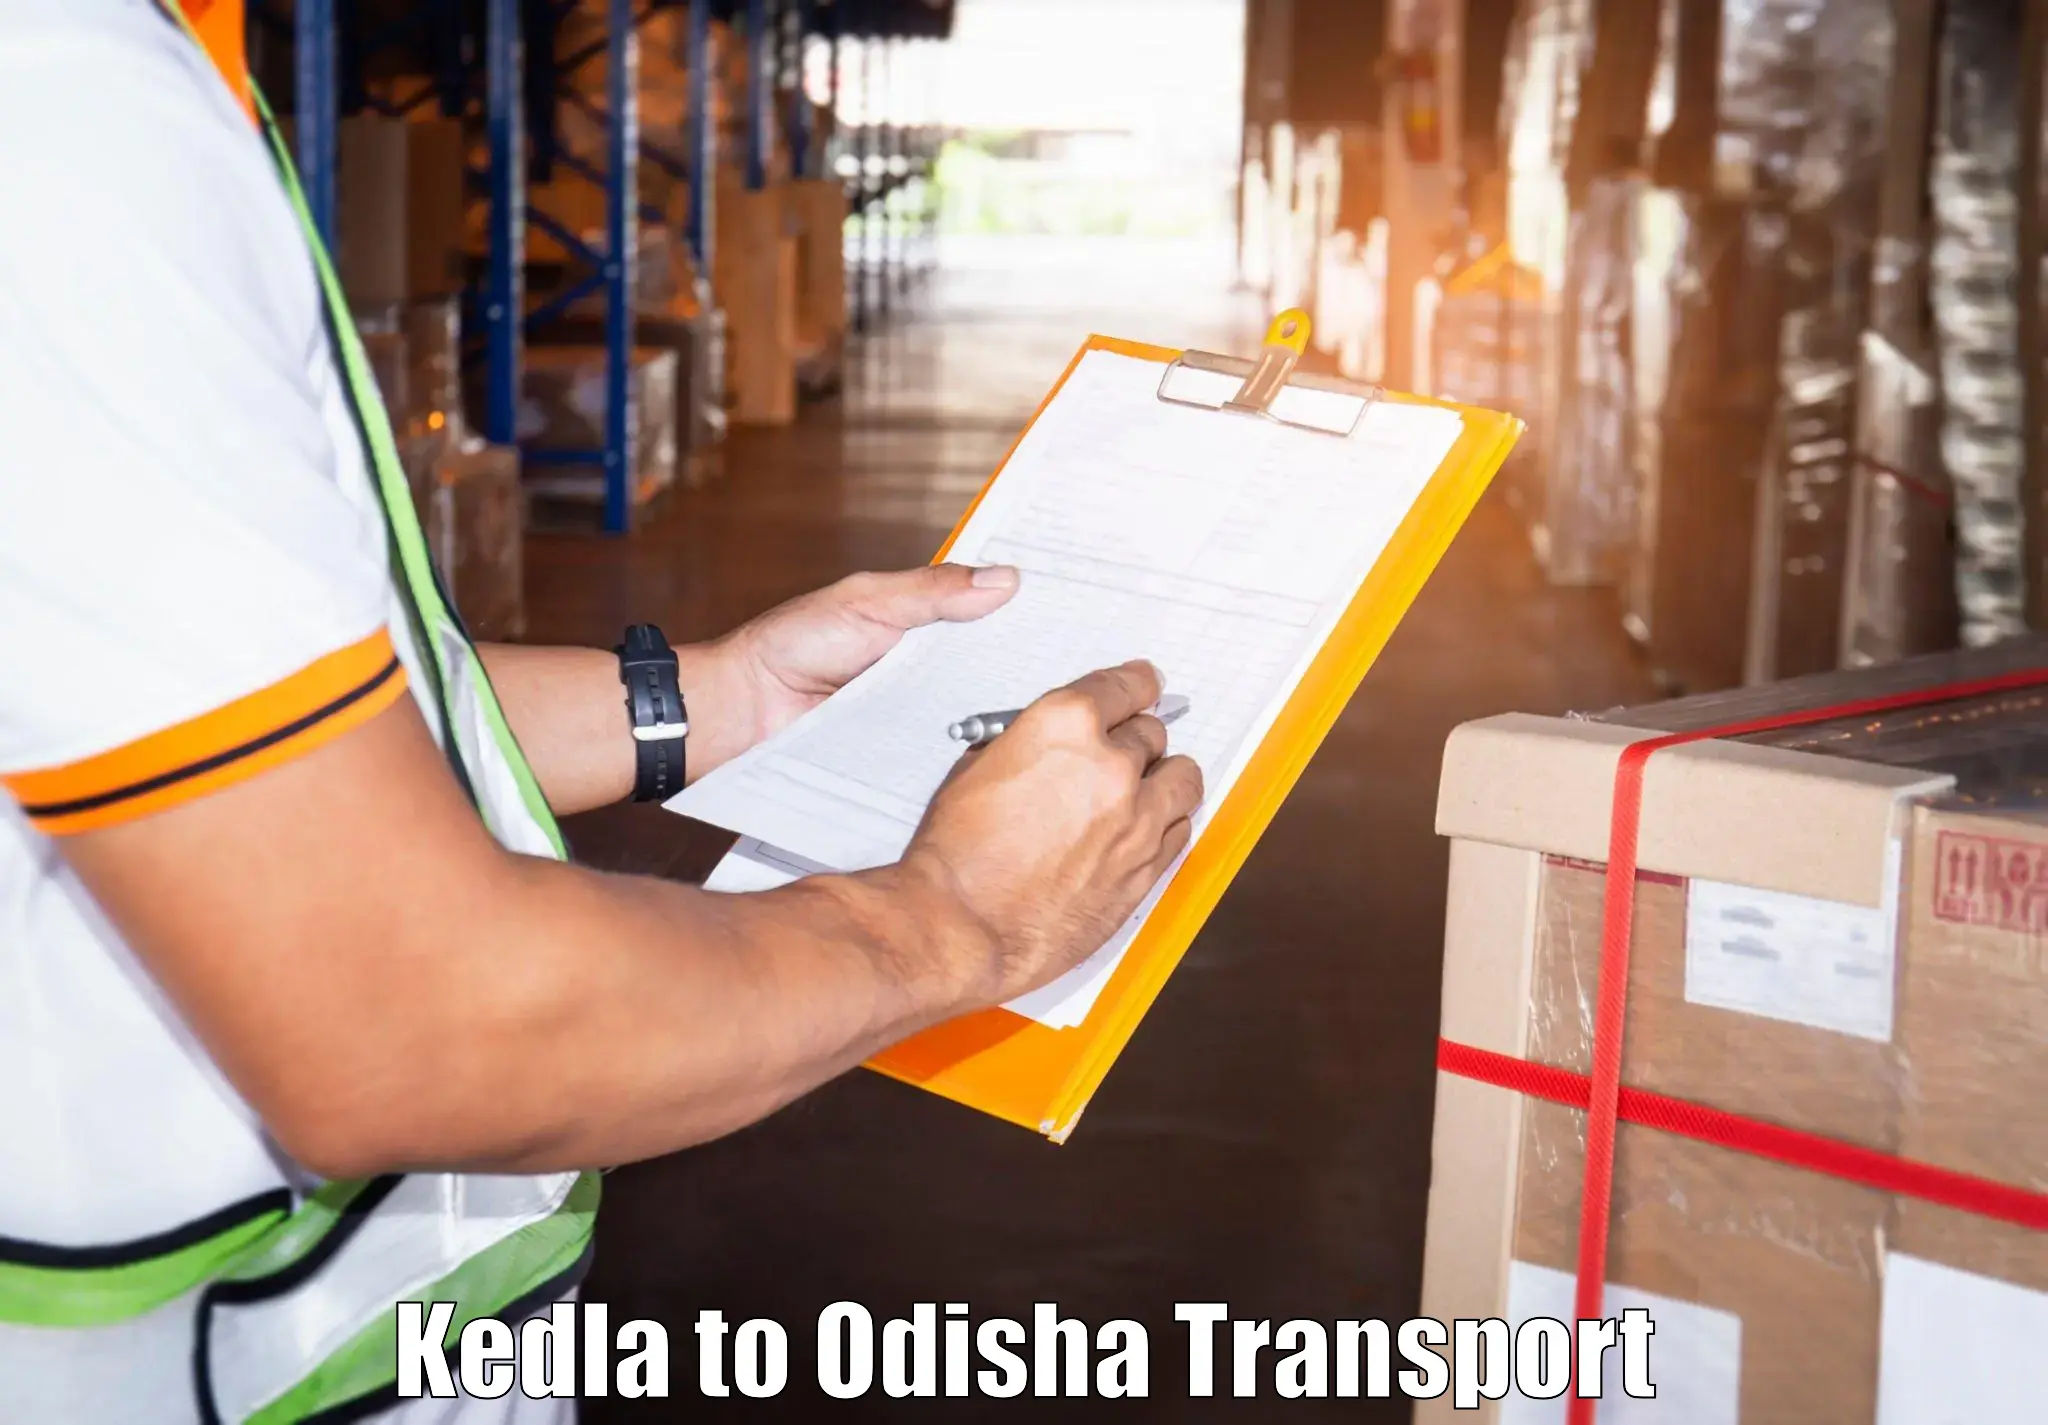 Delivery service Kedla to Brajrajnagar